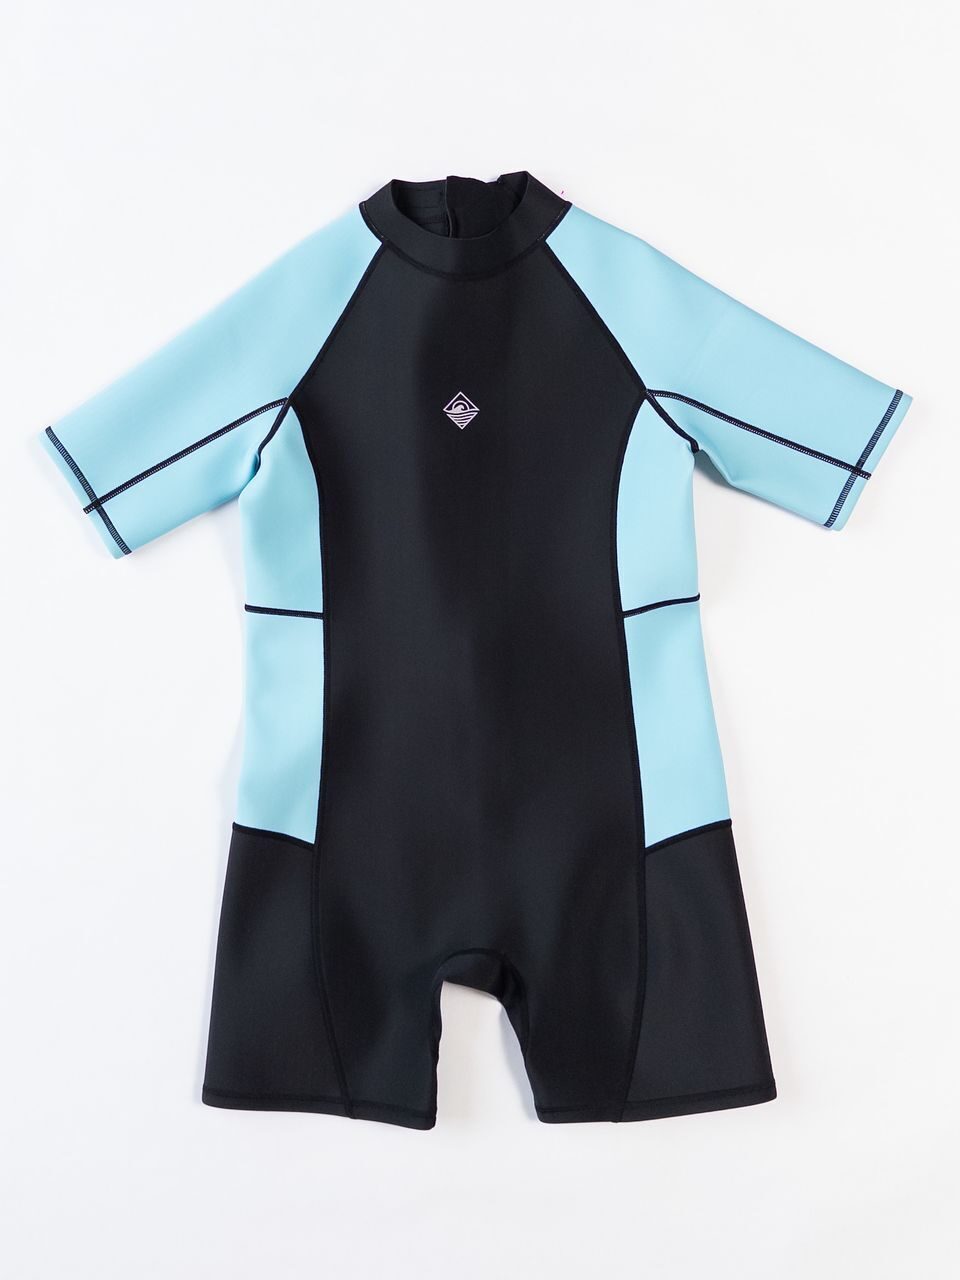 Неопреновый детский гидрокостюм  для мальчика цвет черный/голубой на рост 152 см 11-12 лет Primark